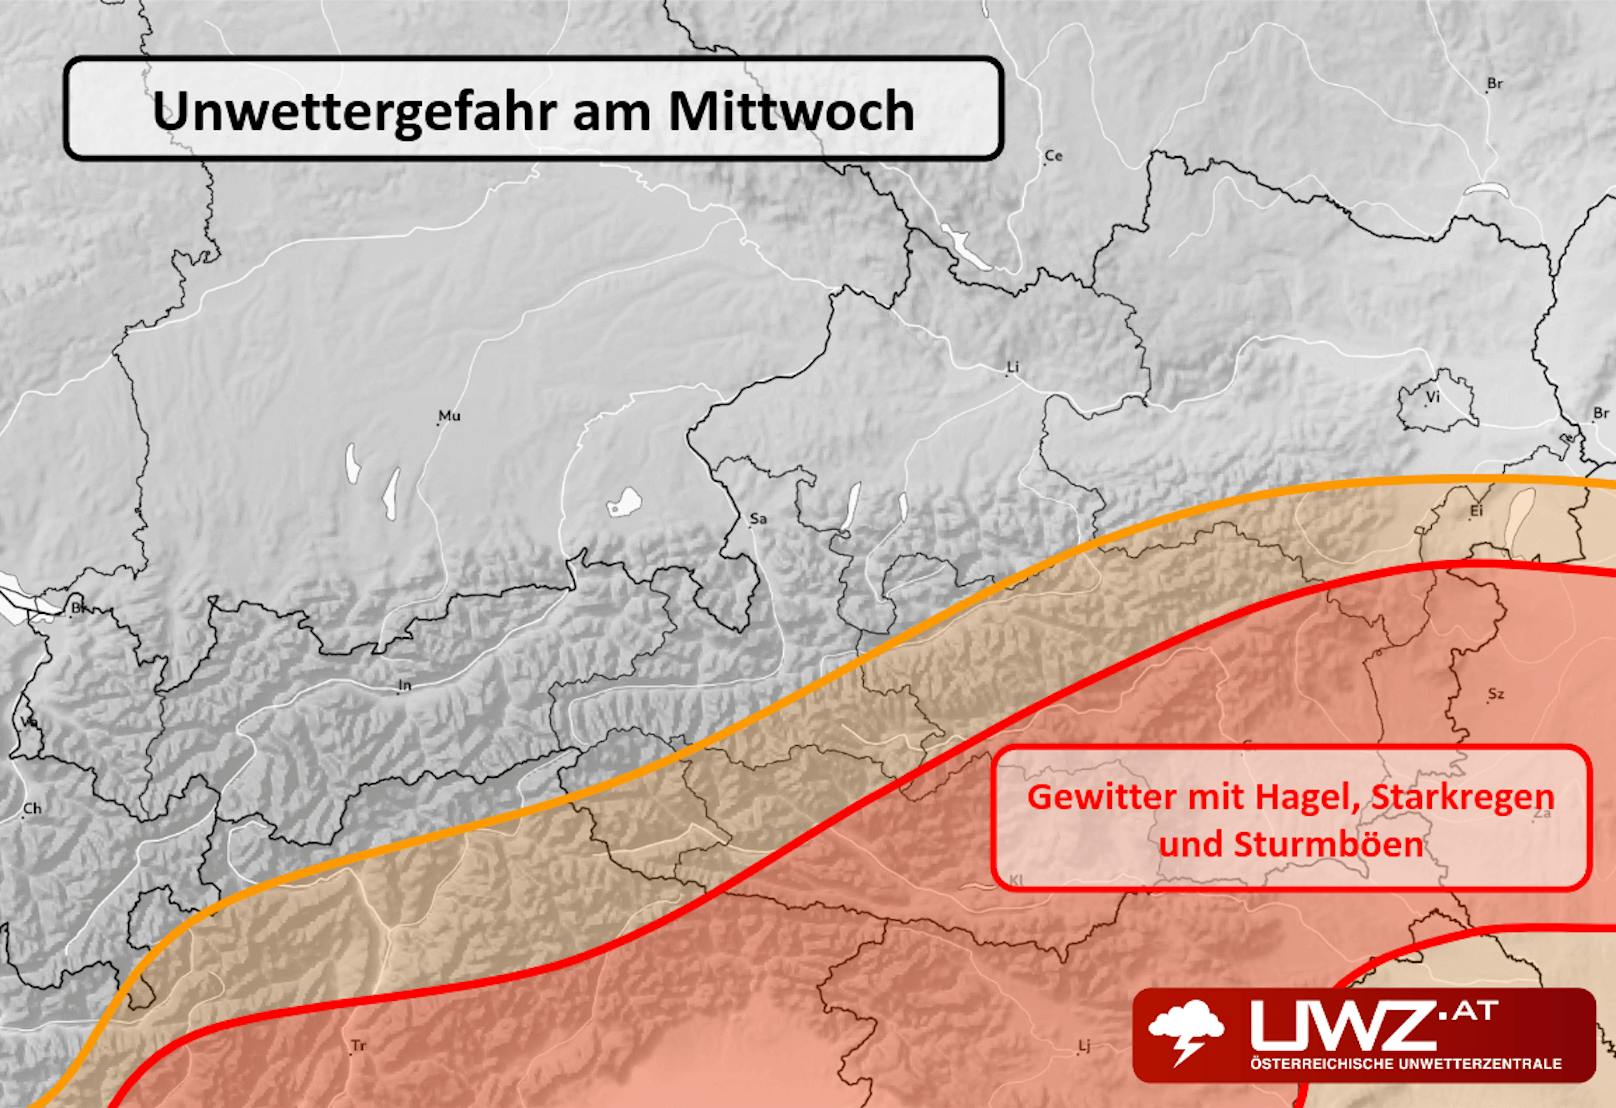 Unwettergefahr am Mittwoch: Im Südosten drohen Hagel, Starkregen und Sturmböen.